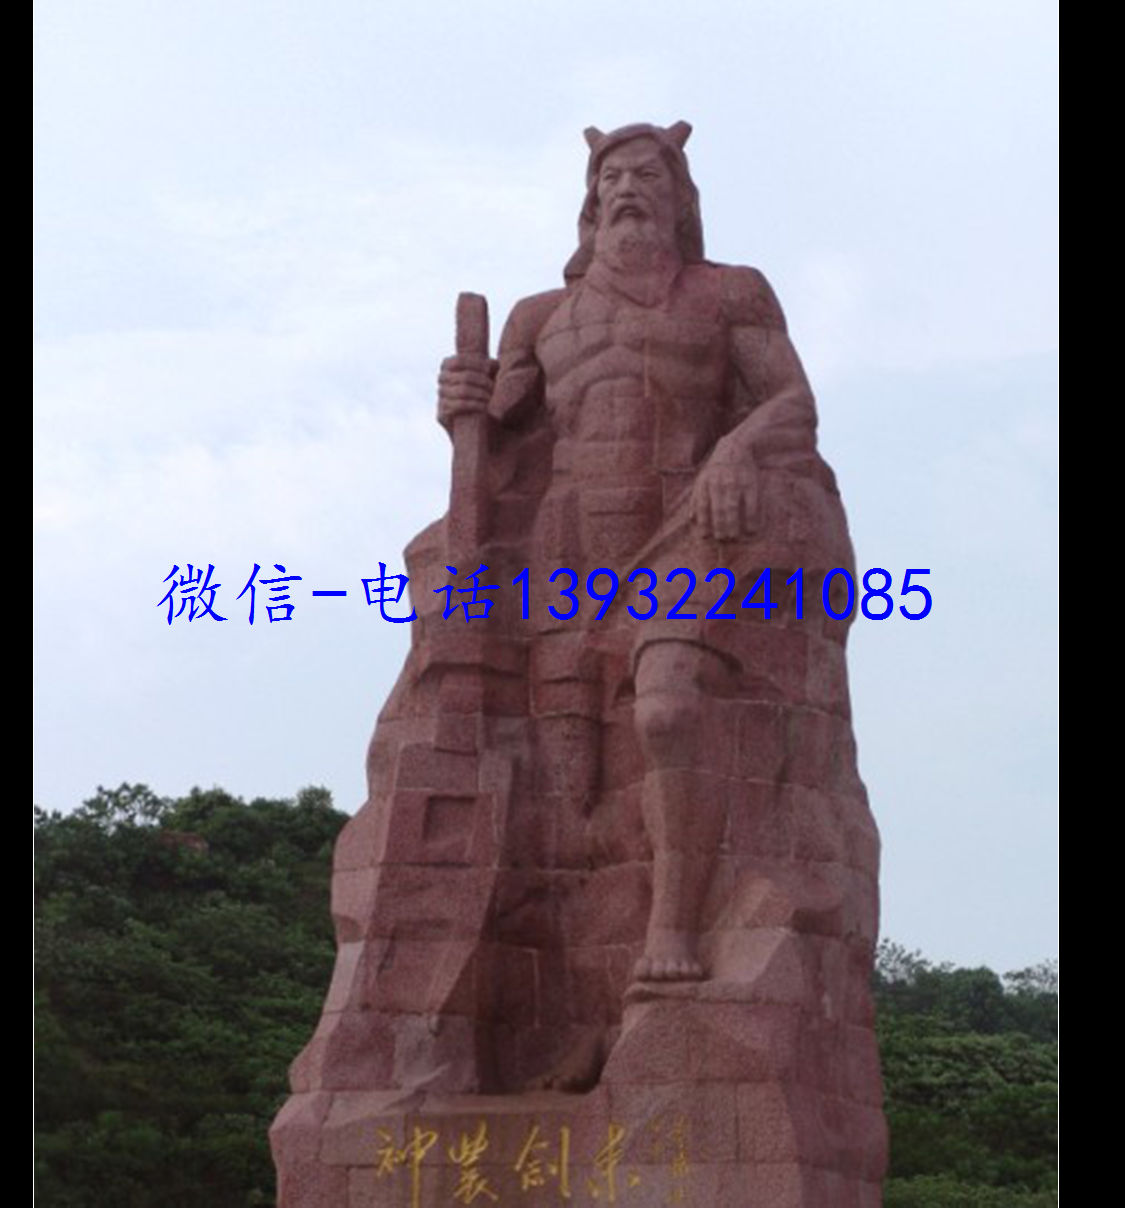 红色石材人物雕像,农耕神农氏雕塑制作